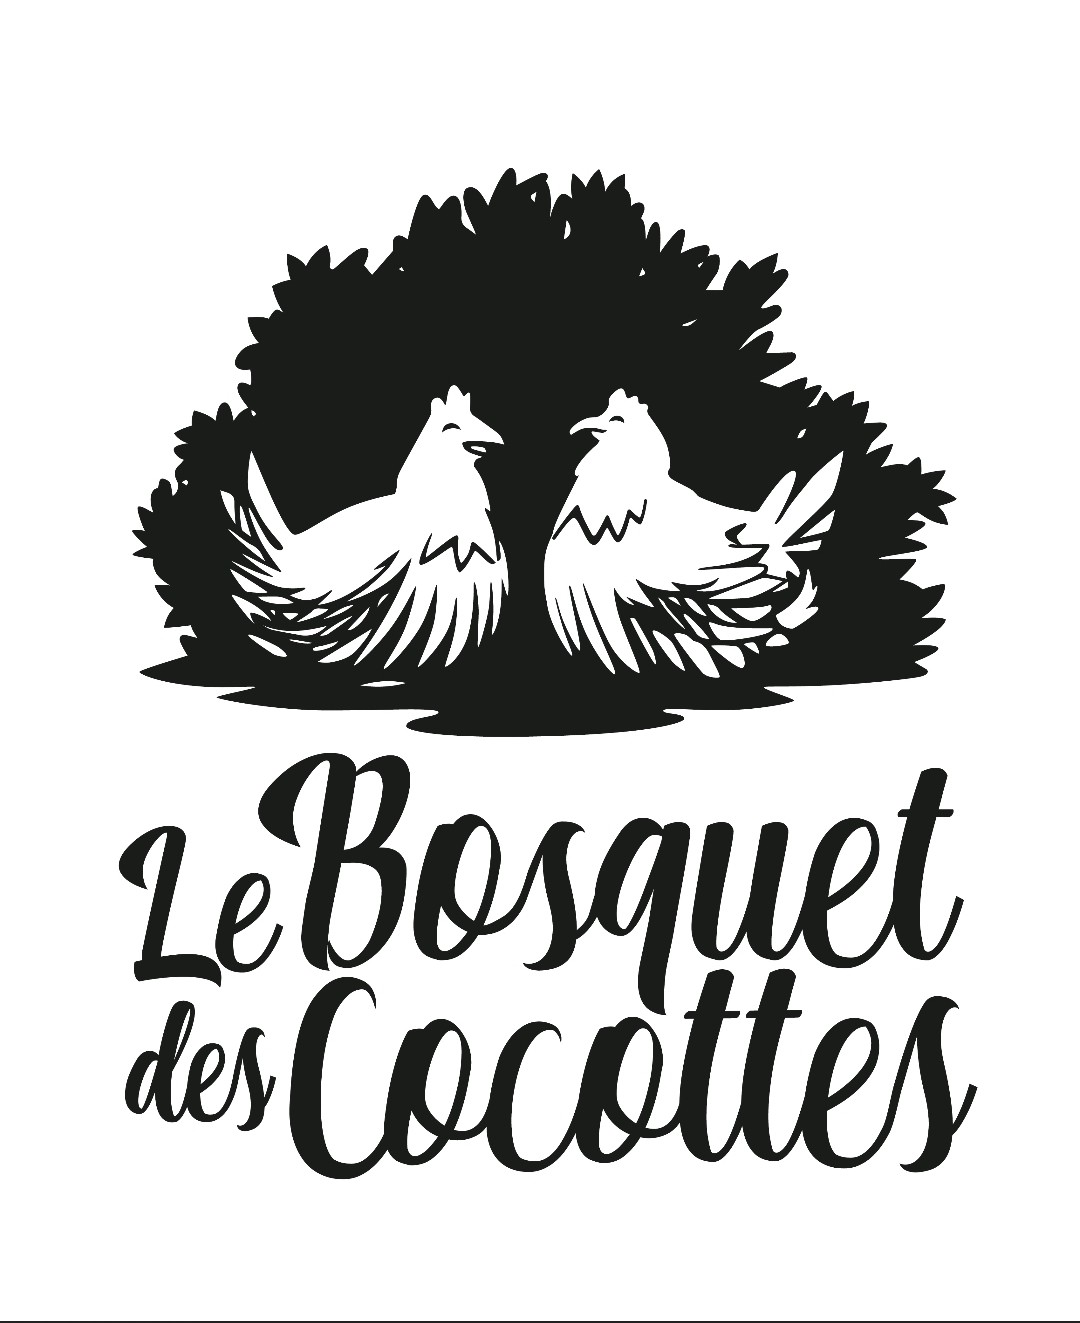 LE BOSQUET DES COCOTTES